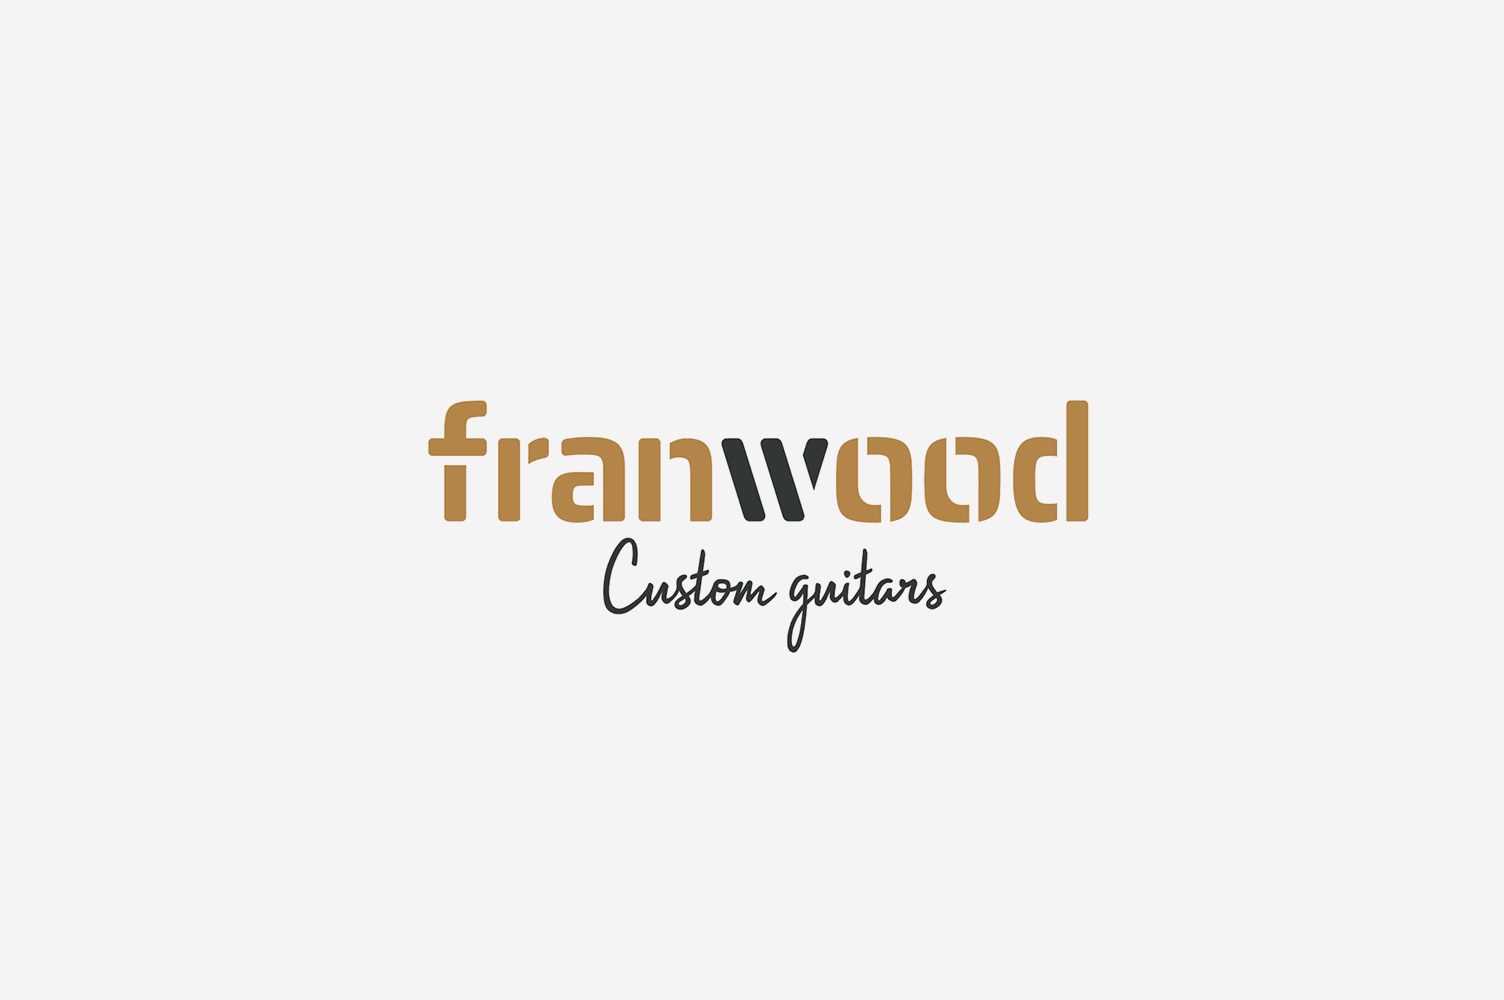 Diseño de logo y fotografía franwood custom guitars